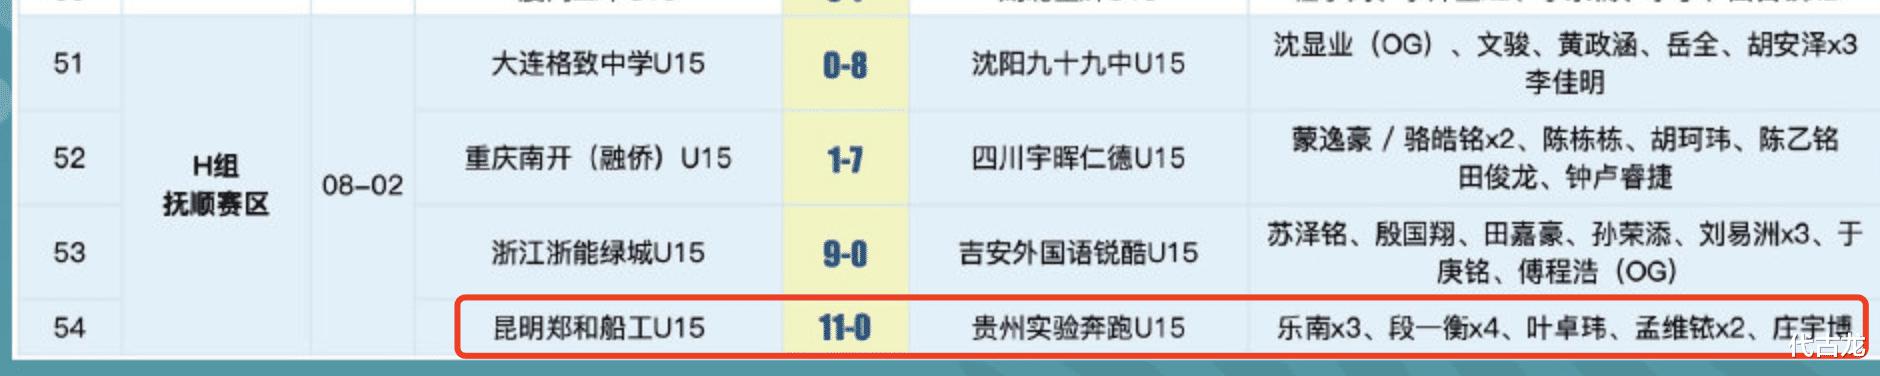 16-0，18-0，24-0，中国青少年足球联赛全国总决赛惨案不断(4)